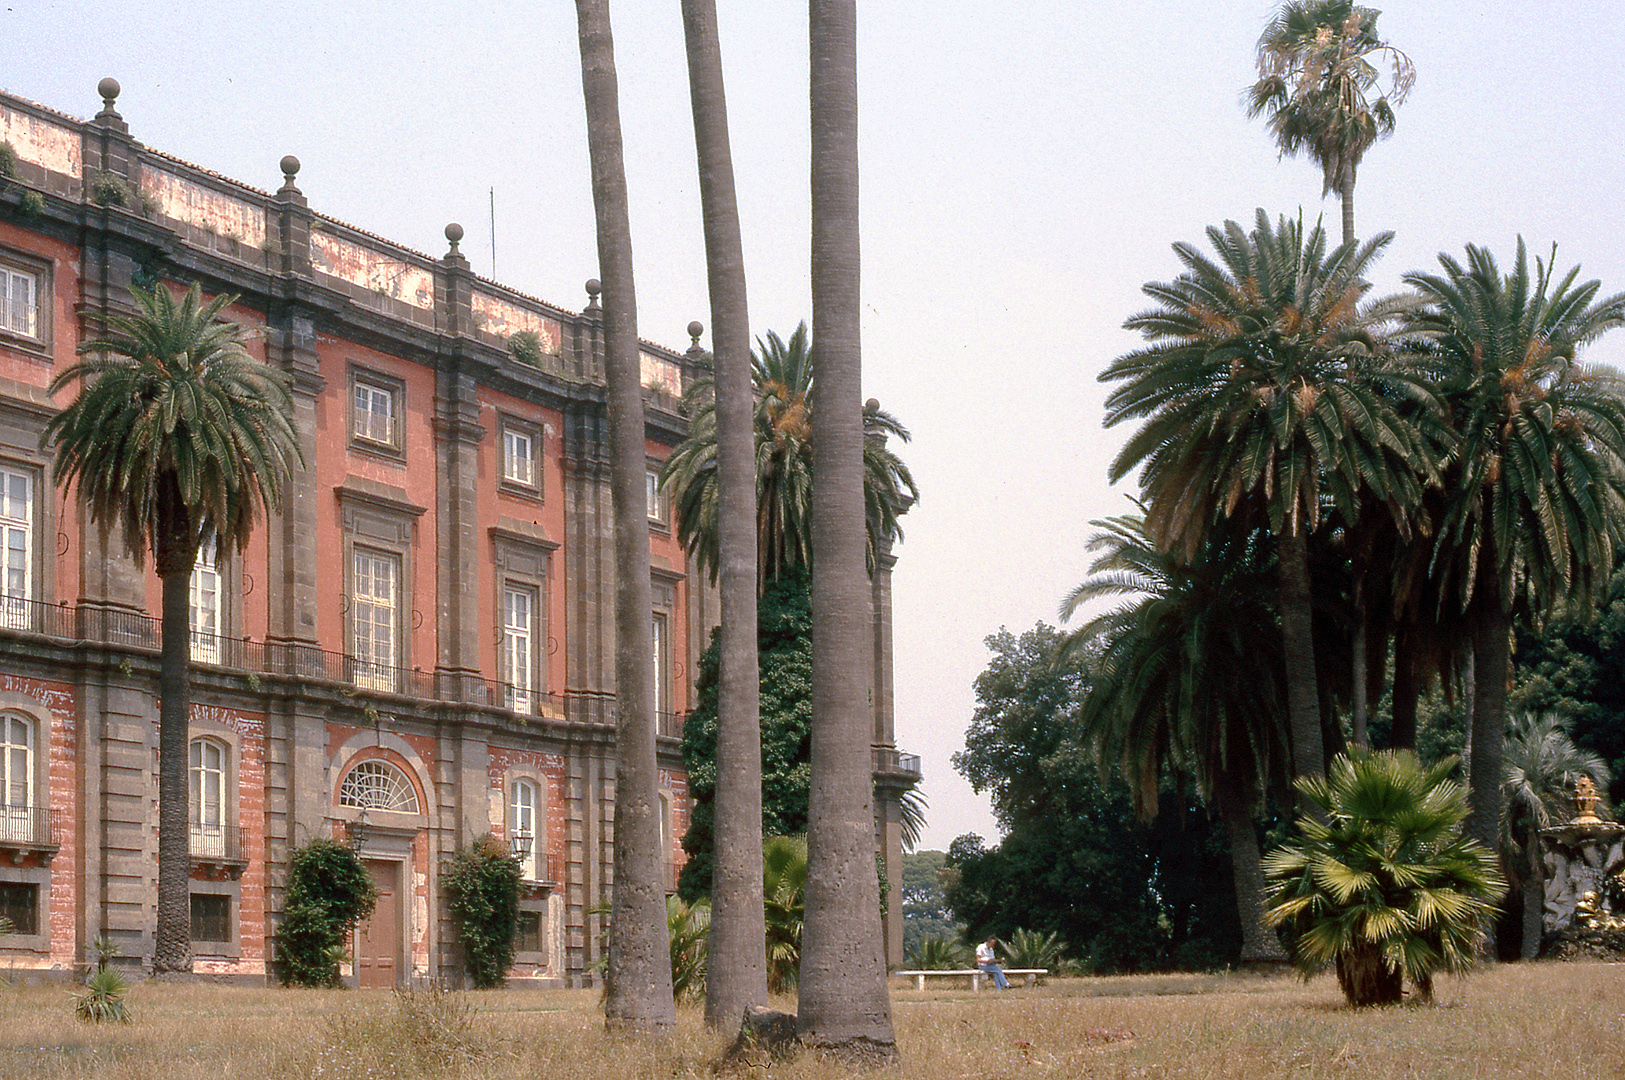 Paleis van Capodimonte, Napels (Campani); Palace of Capodimonte, Naples (Campania, Italy)